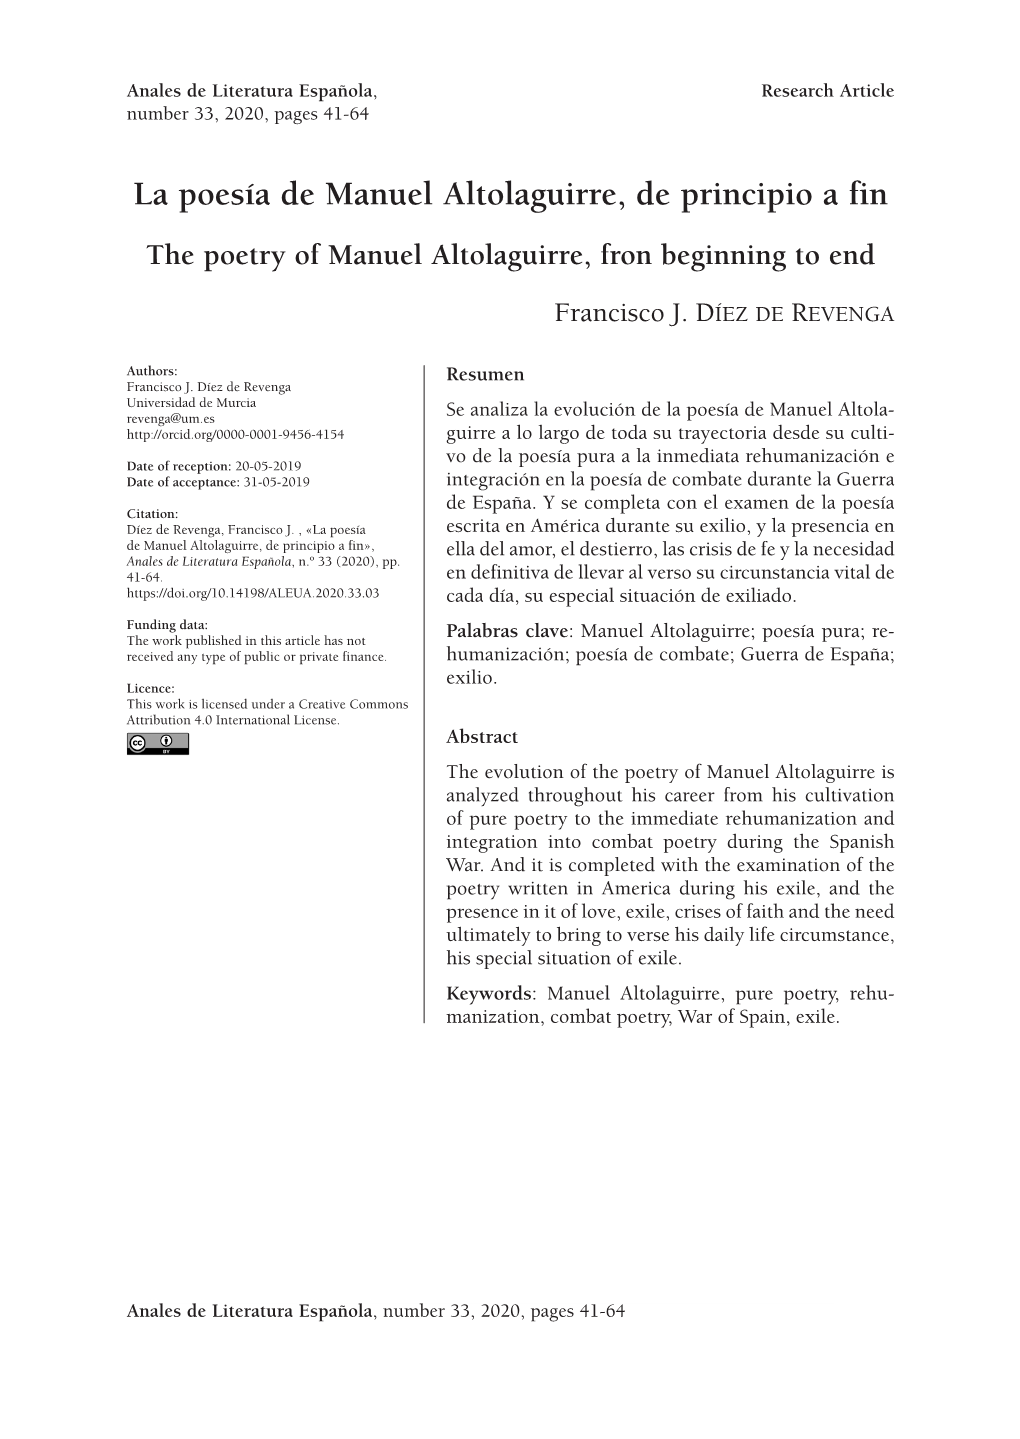 La Poesía De Manuel Altolaguirre, De Principio a Fin the Poetry of Manuel Altolaguirre, Fron Beginning to End